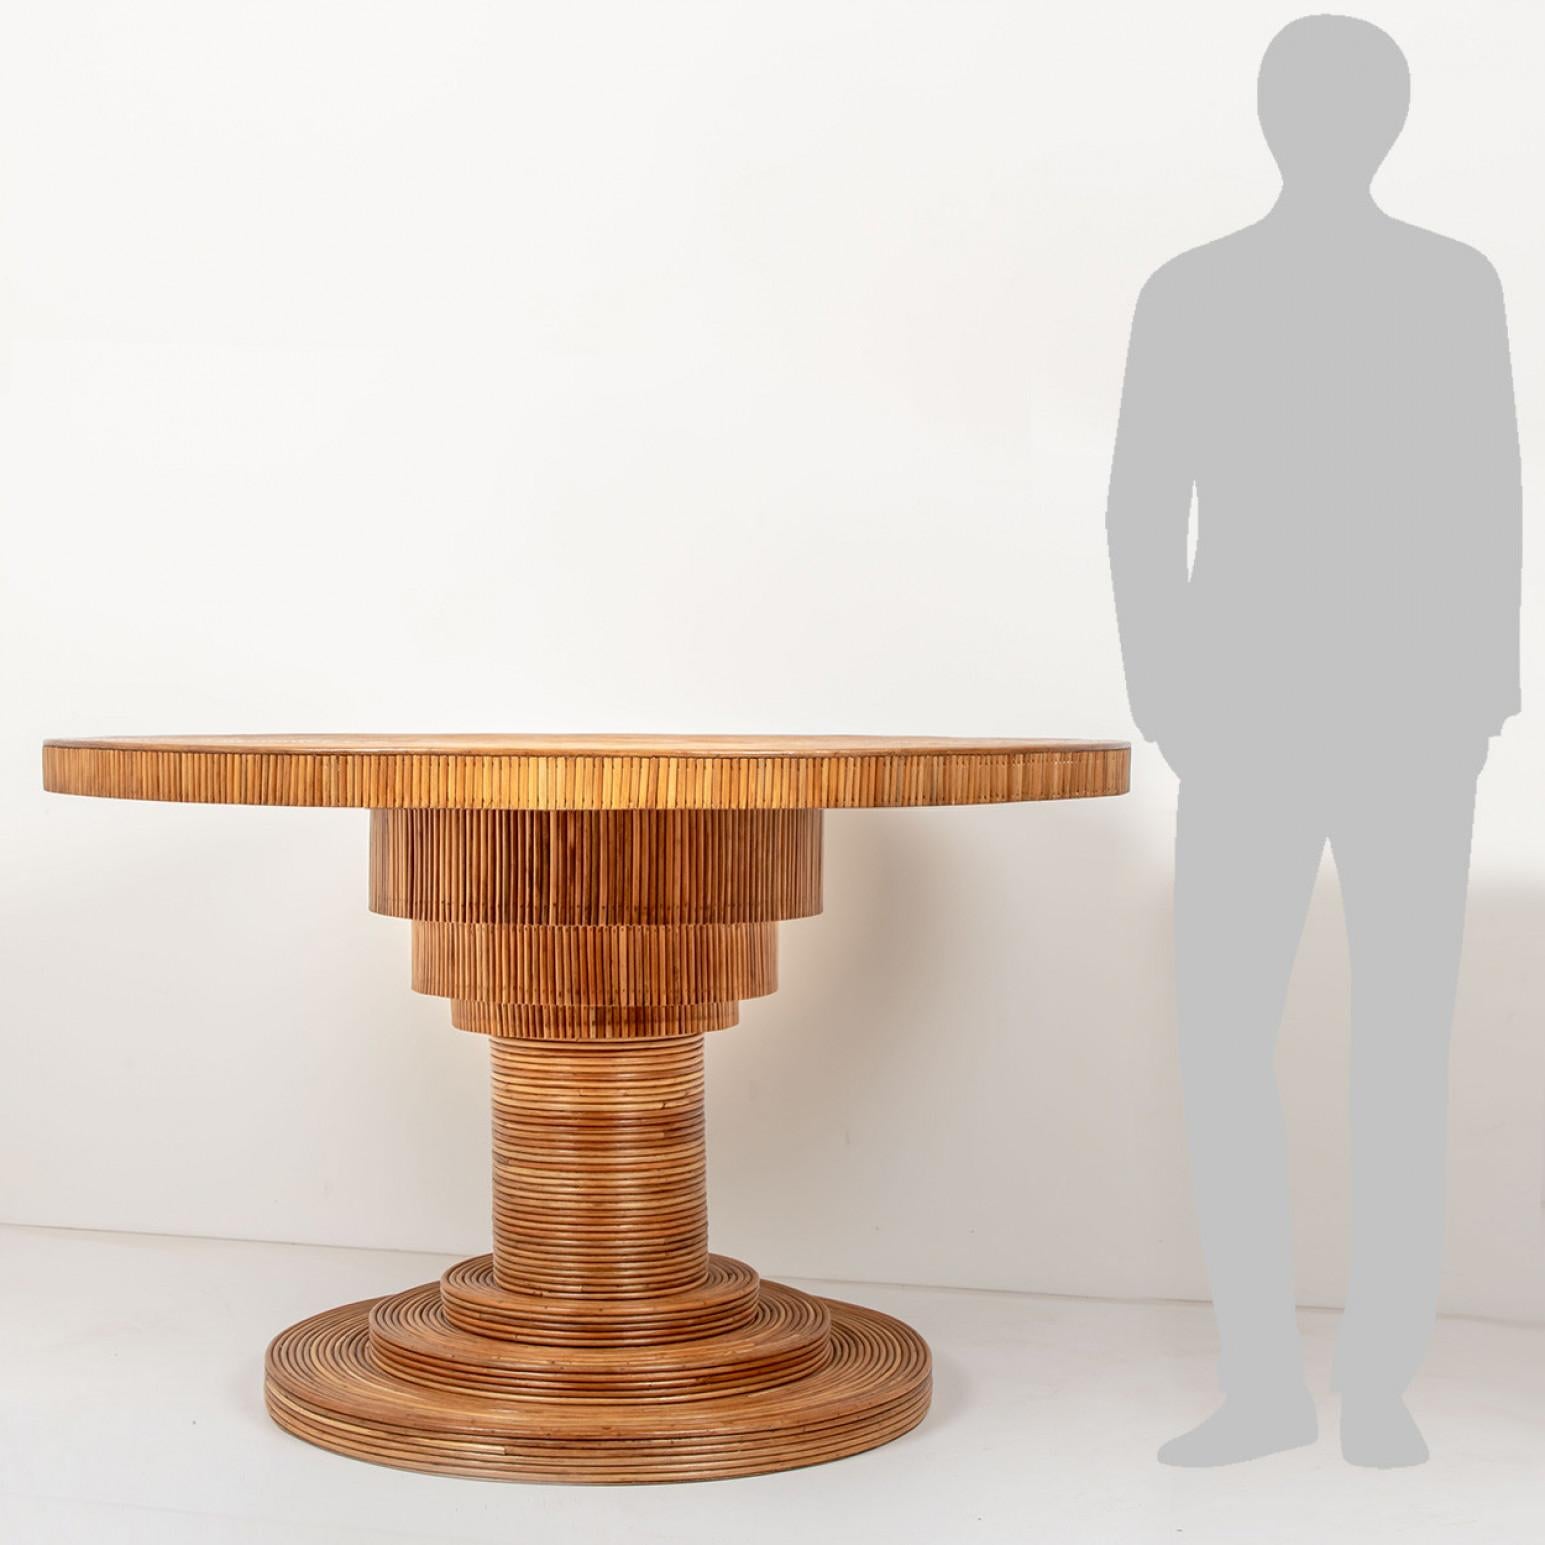 Merveilleuse table de salle à manger en rotin façonnée par l'artiste néerlandais Rene Houben. Une véritable œuvre d'art.

Diamètre 120 cm Hauteur 29.5 inch/75 cm Hauteur du plateau 2,6 inch/5.5 cm Diamètre de la base 30 inch/75 cm

Dimensions